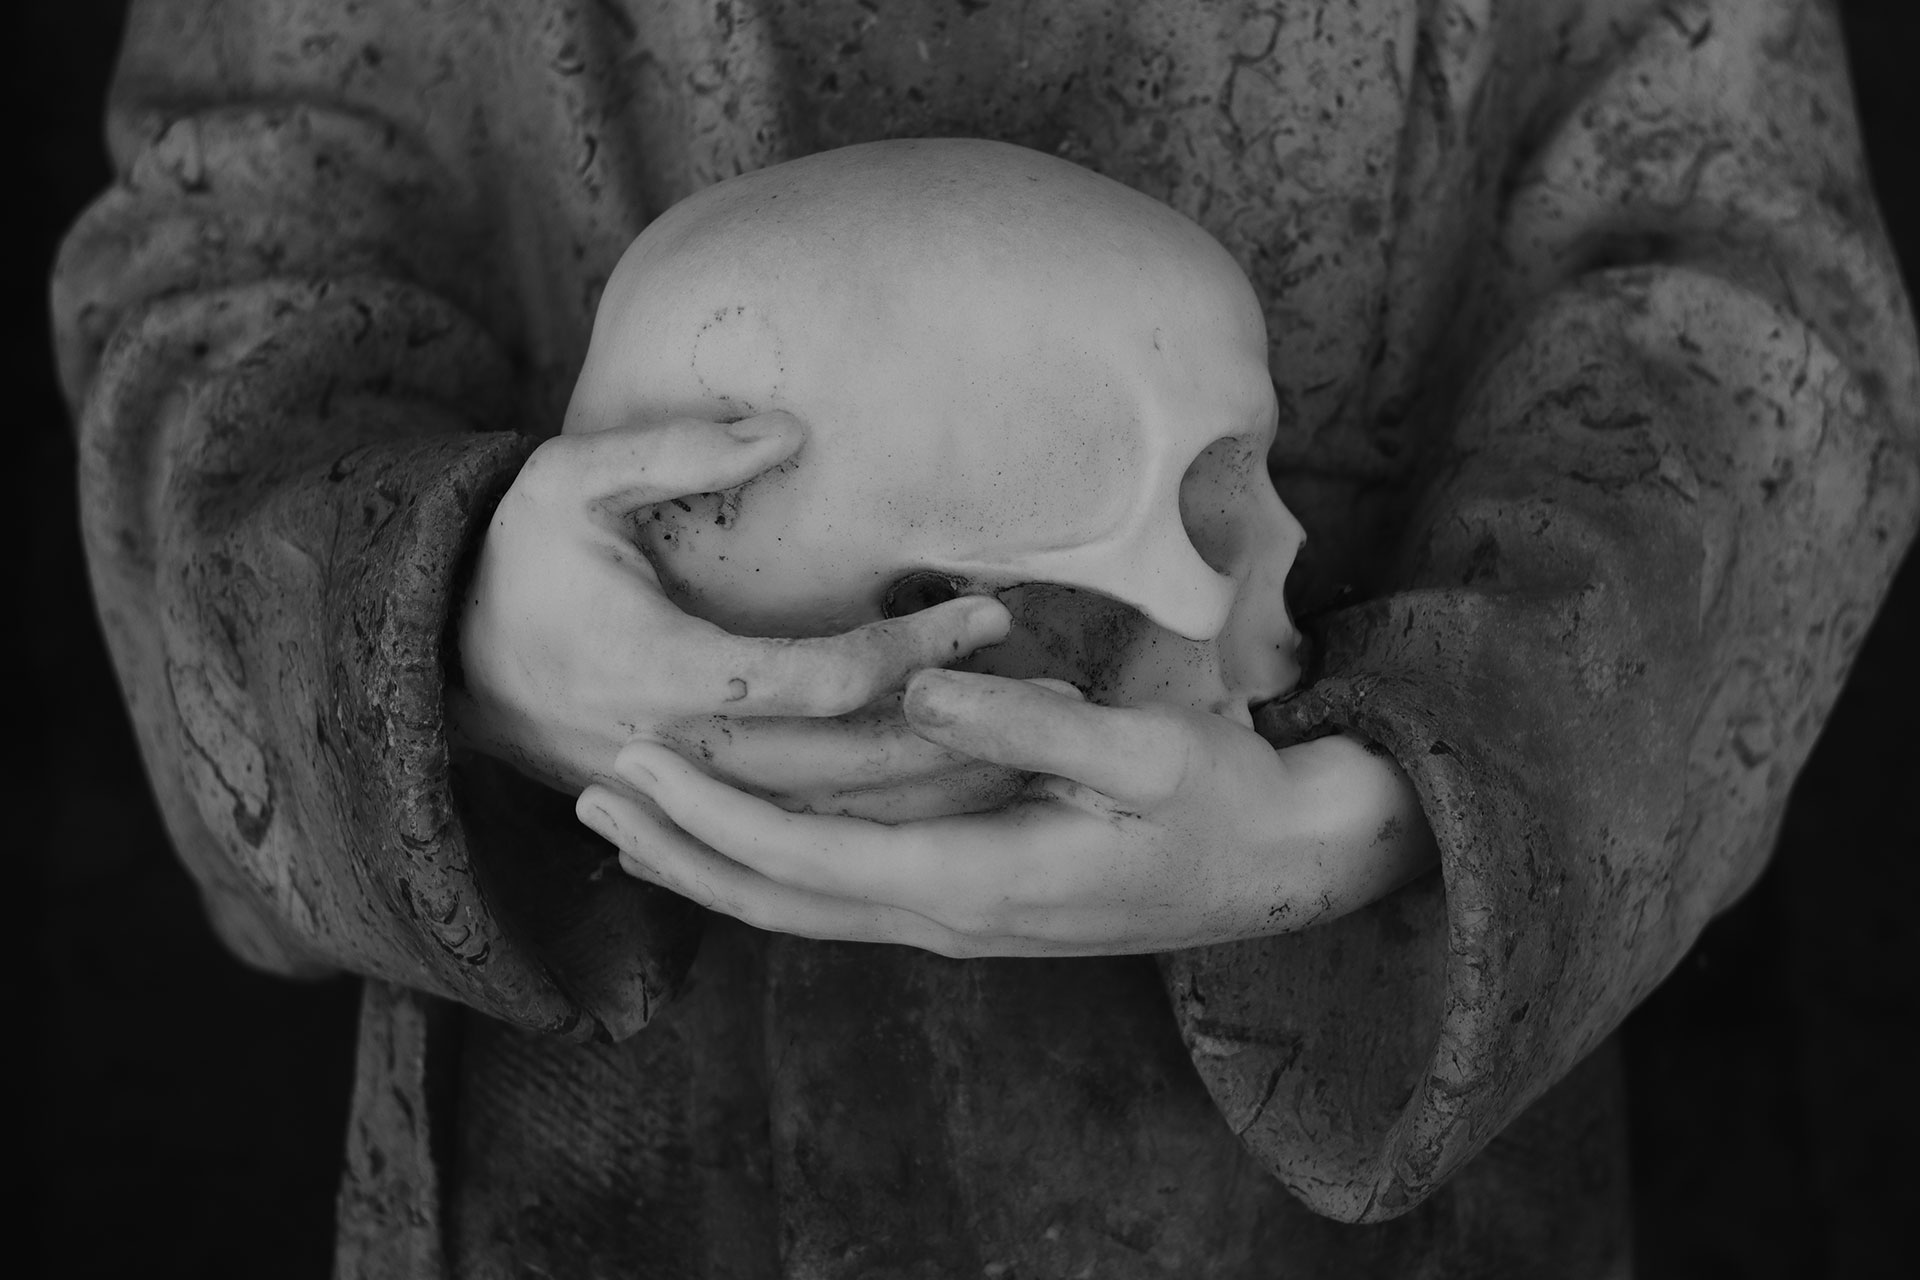 "Final óseo" de Garazi Monte, fotografía ganadora del III Concurso de fotografía "Cementerio de Bilbao"